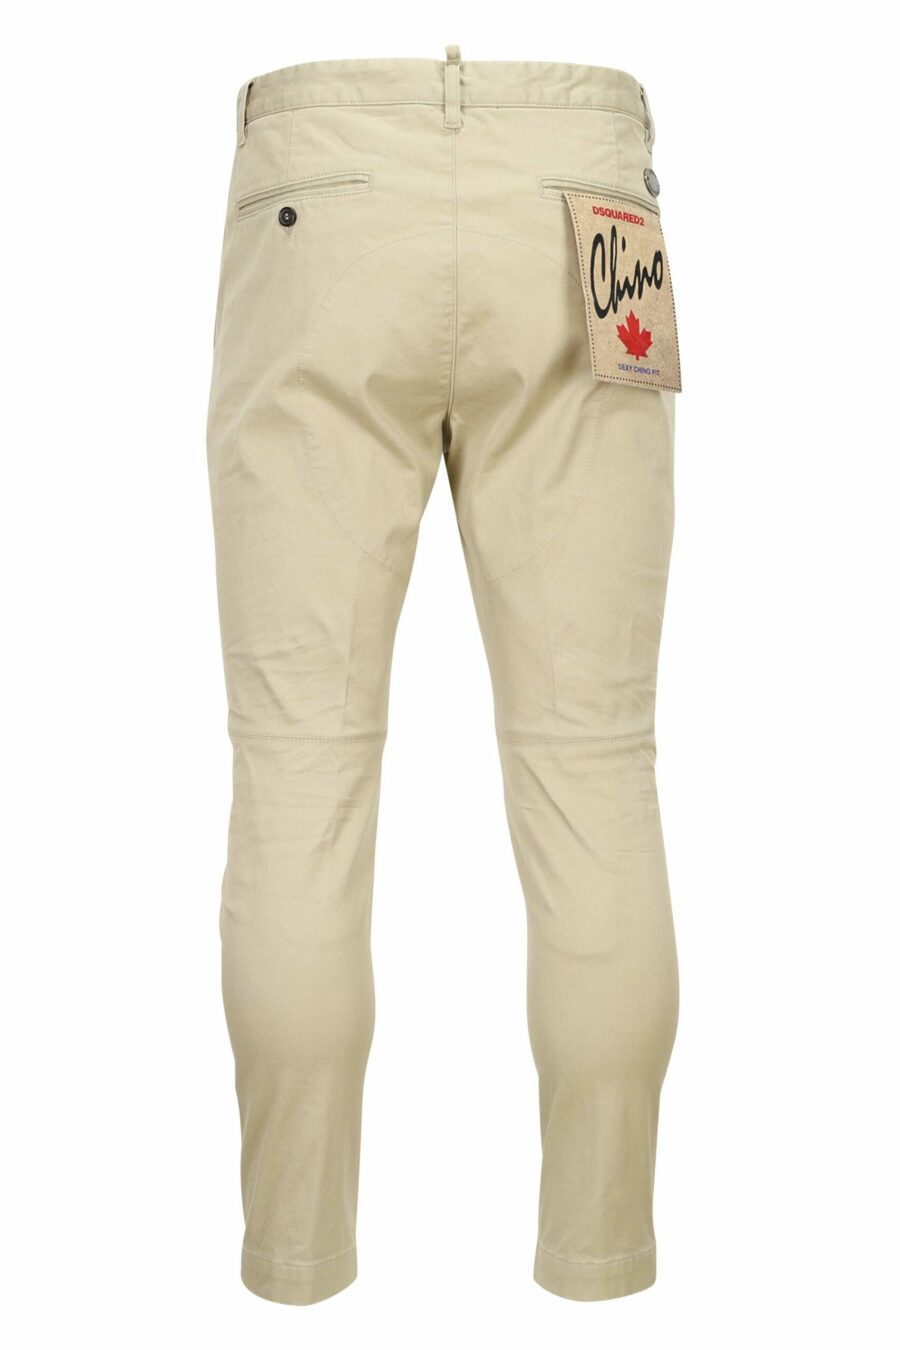 Pantalon "sexy chino" beige avec mini-logo - 8052134973257 2 échelles